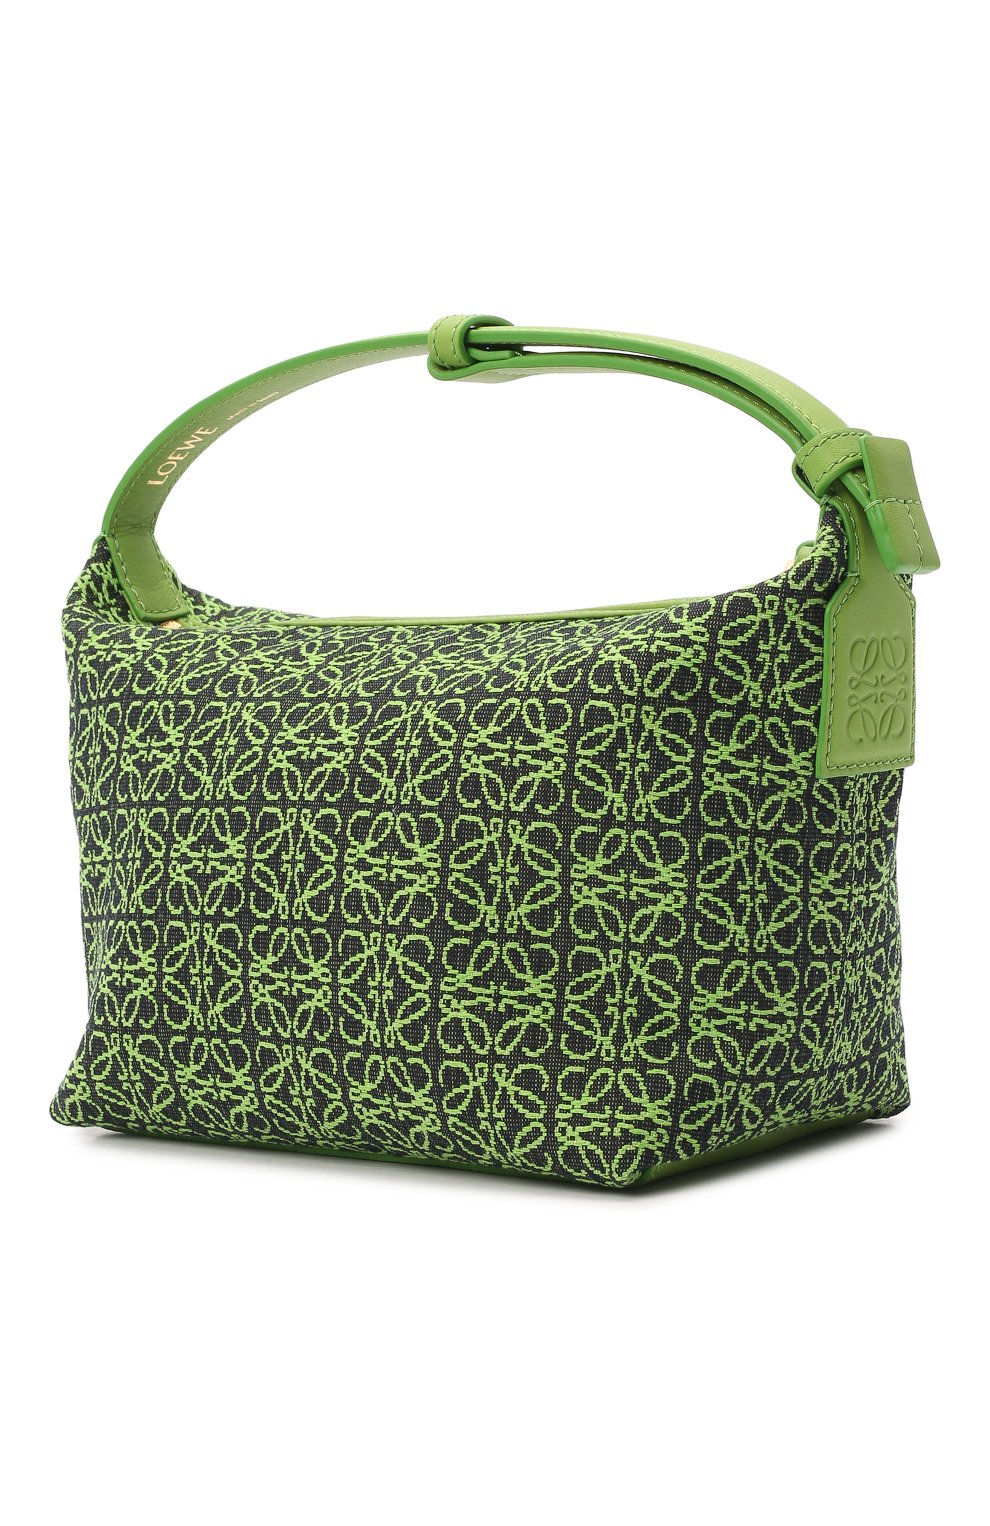 Женская сумка cubi small LOEWE зеленого цвета, арт. A906K75X06 | Фото 4 (Сумки-технические: Сумки через плечо, Сумки top-handle; Материал: Текстиль; Размер: small)